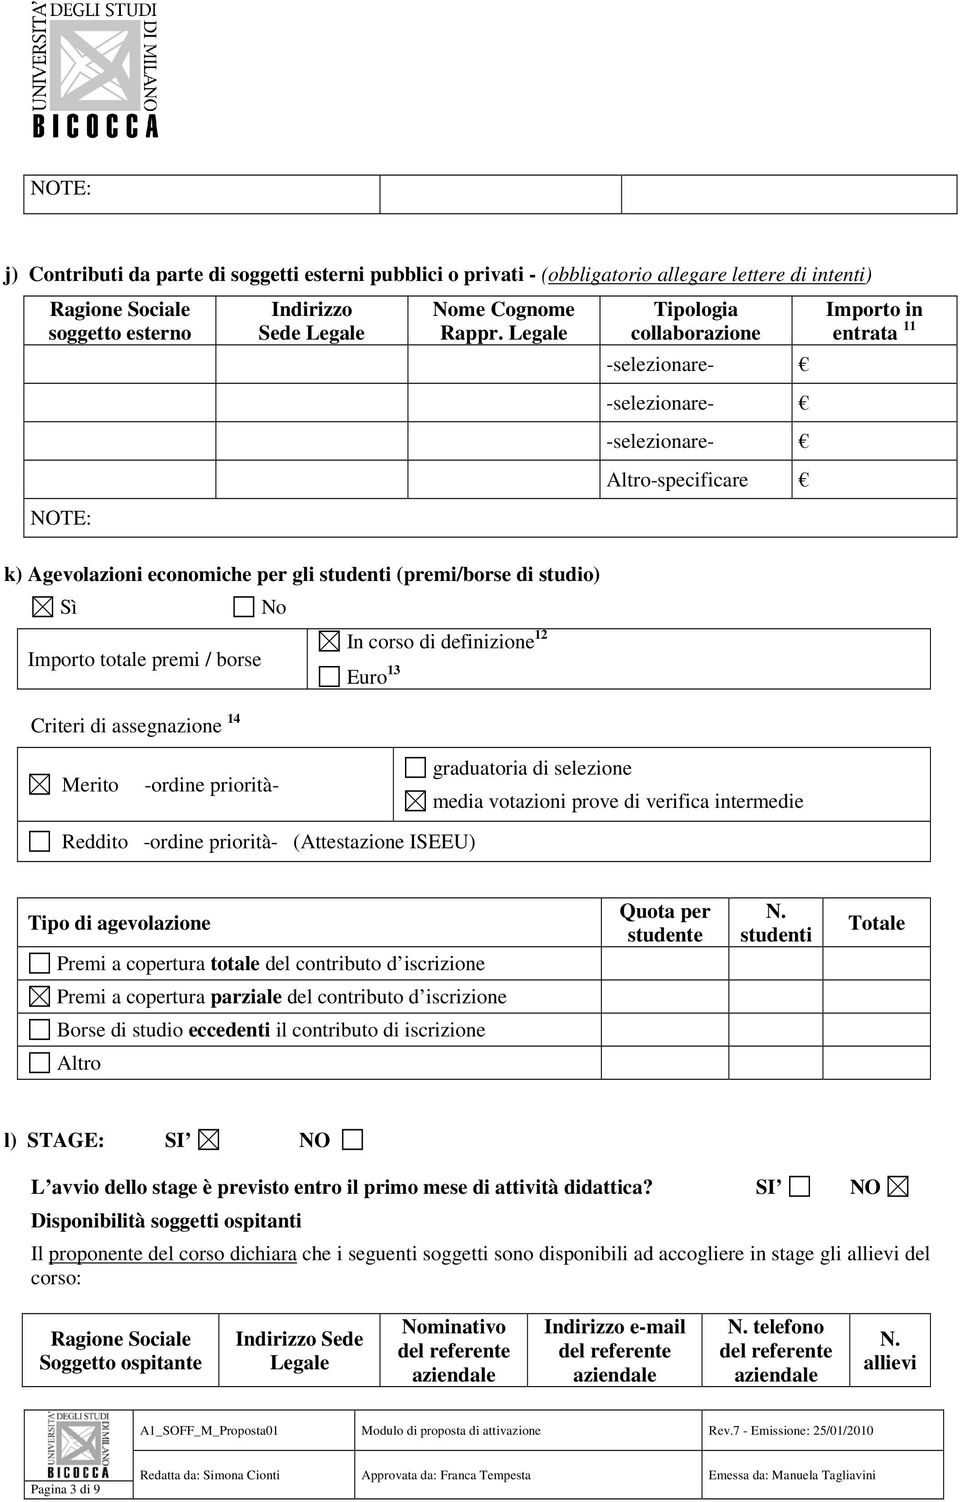 borse Euro 13 Criteri di assegnazione 14 Merito -ordine priorità- graduatoria di selezione media votazioni prove di verifica intermedie Reddito -ordine priorità- (Attestazione ISEEU) Tipo di